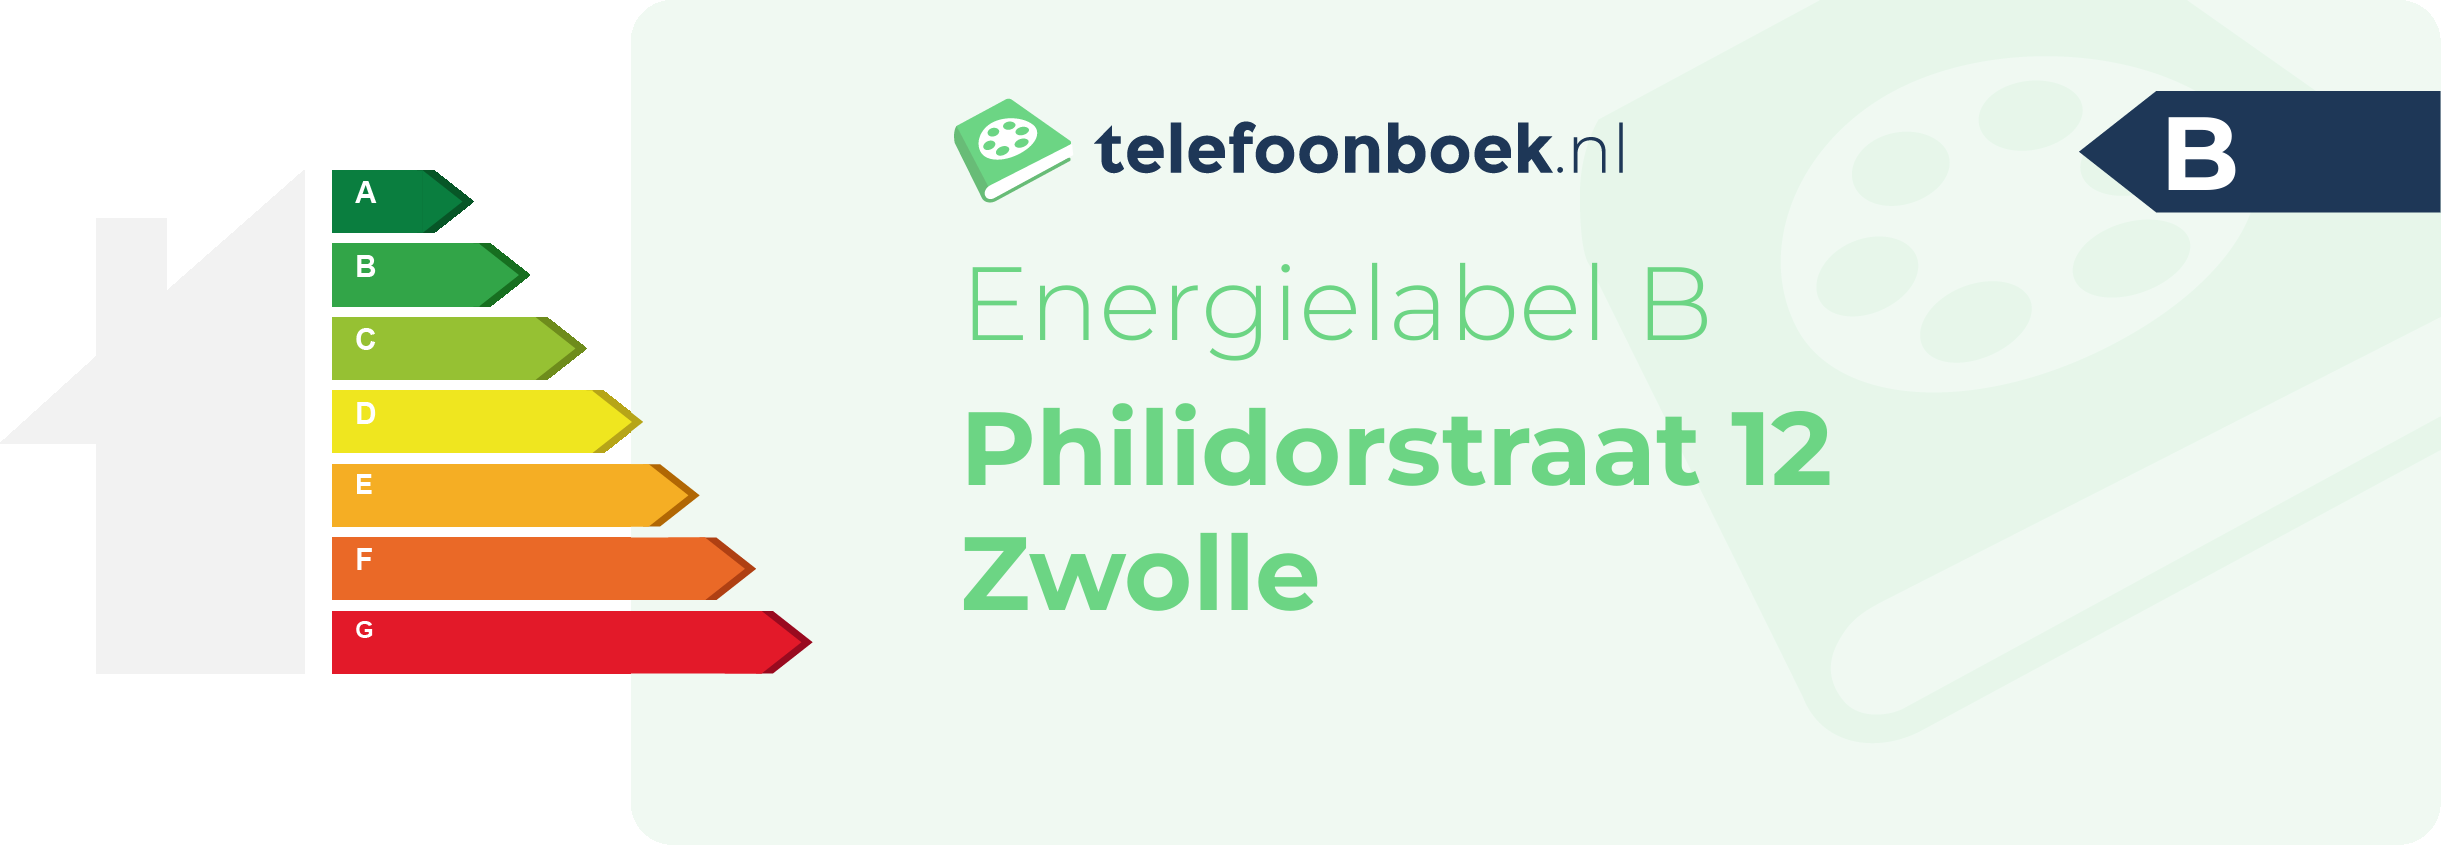 Energielabel Philidorstraat 12 Zwolle